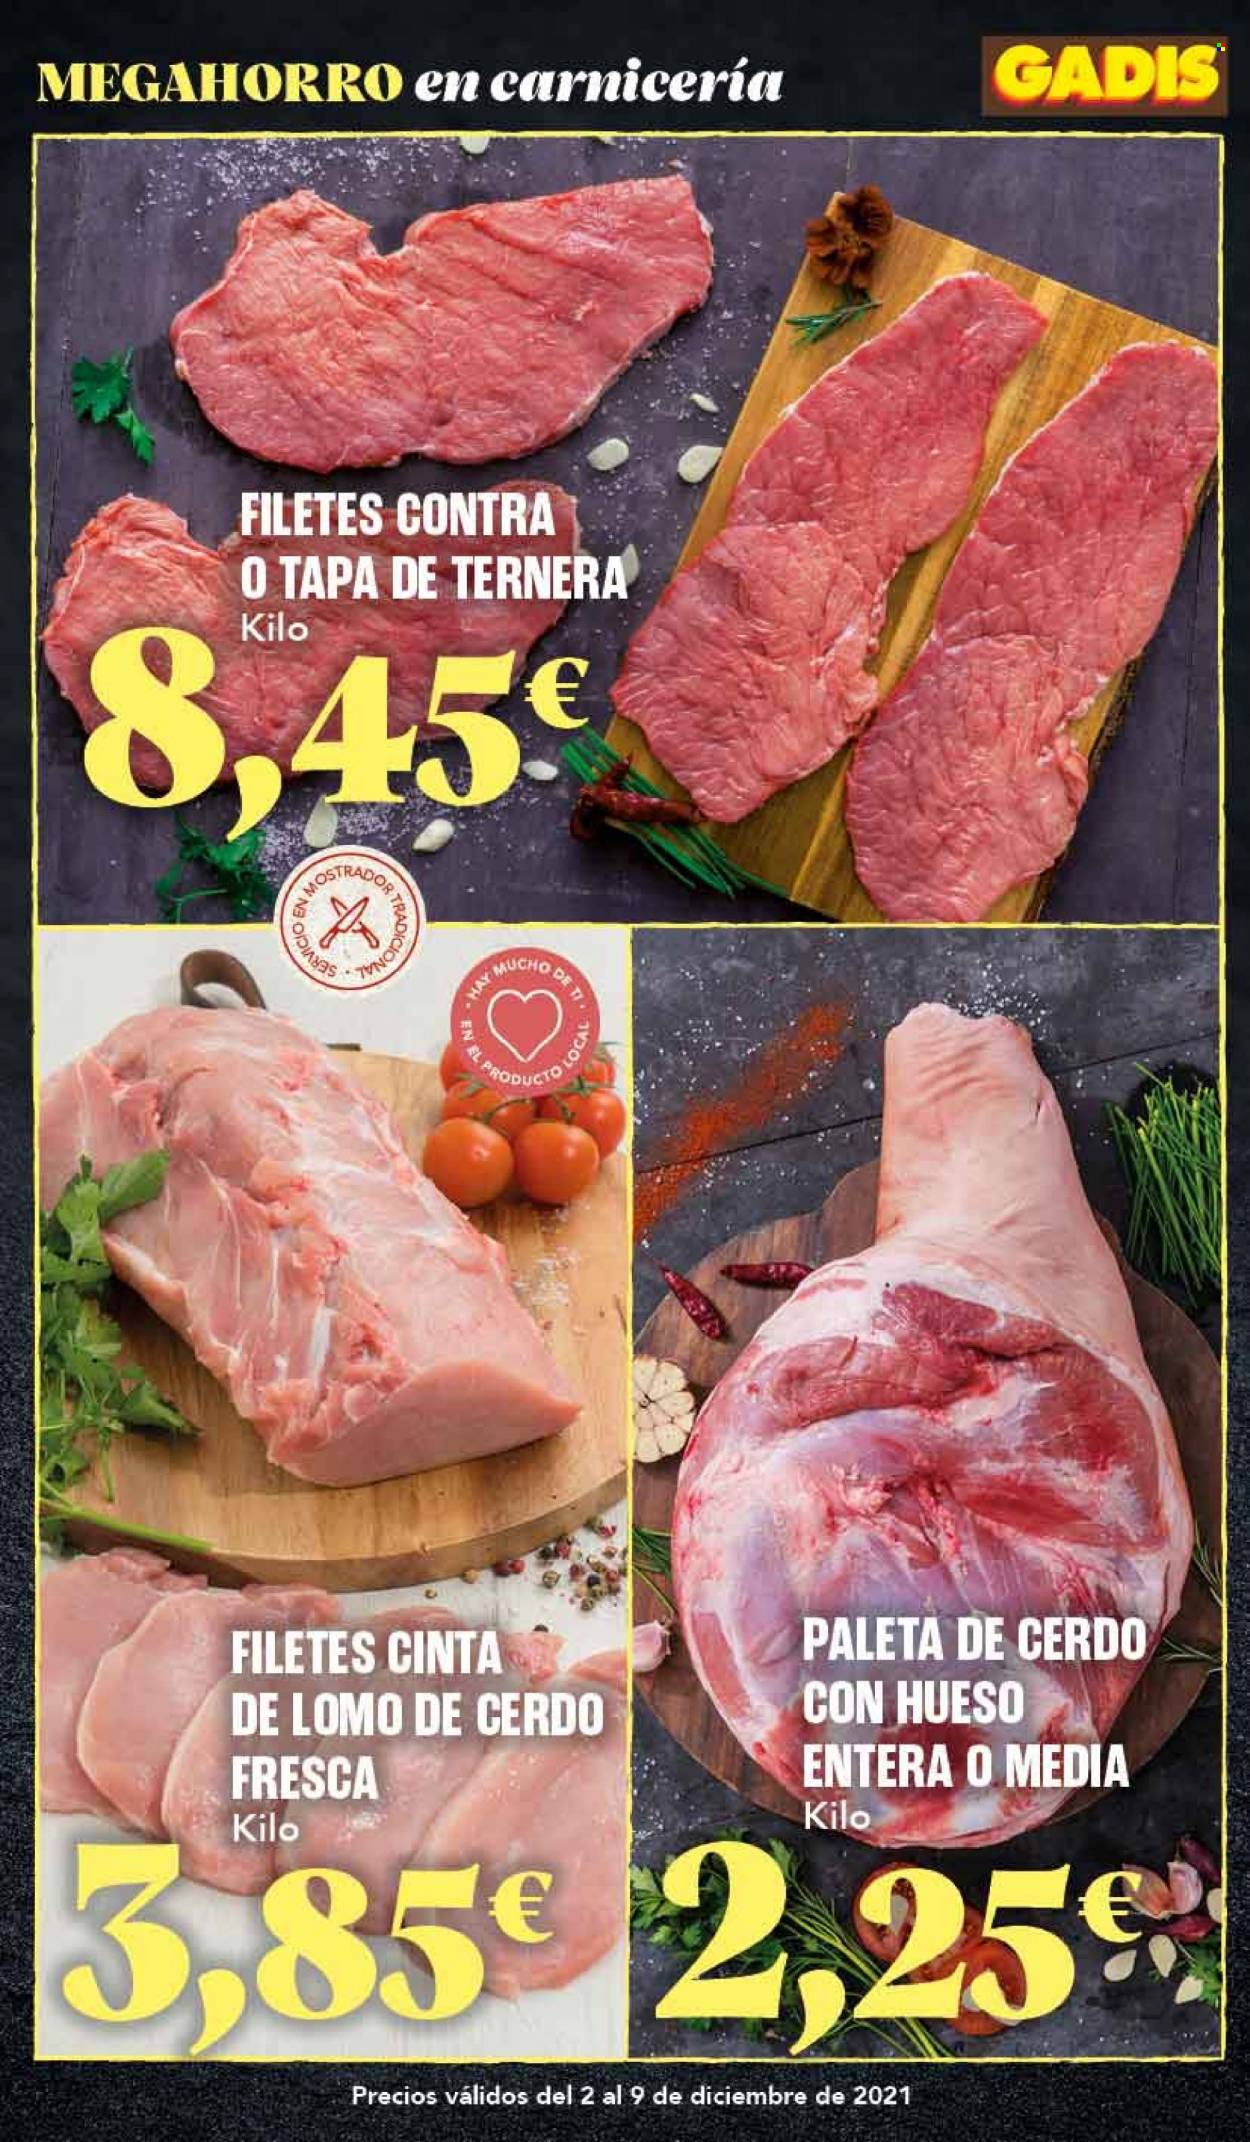 thumbnail - Folleto actual Gadis - 02/12/21 - 09/12/21 - Ventas - lomo de cerdo, cinta de lomo, carne de ternera. Página 2.